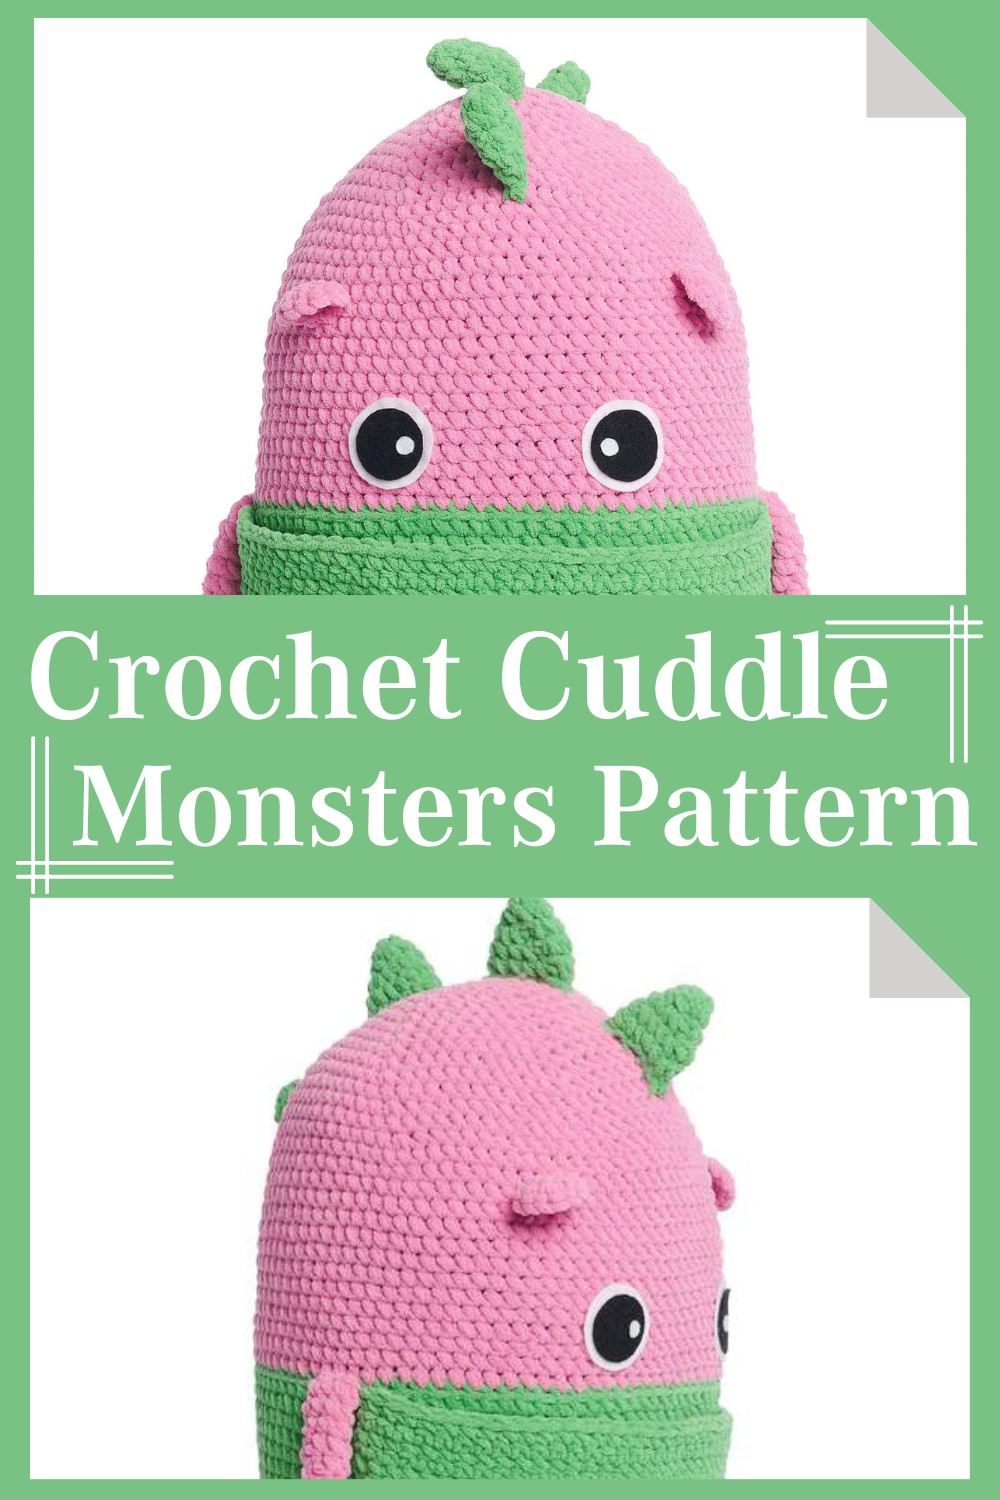 Crochet Cuddle Monsters Pattern